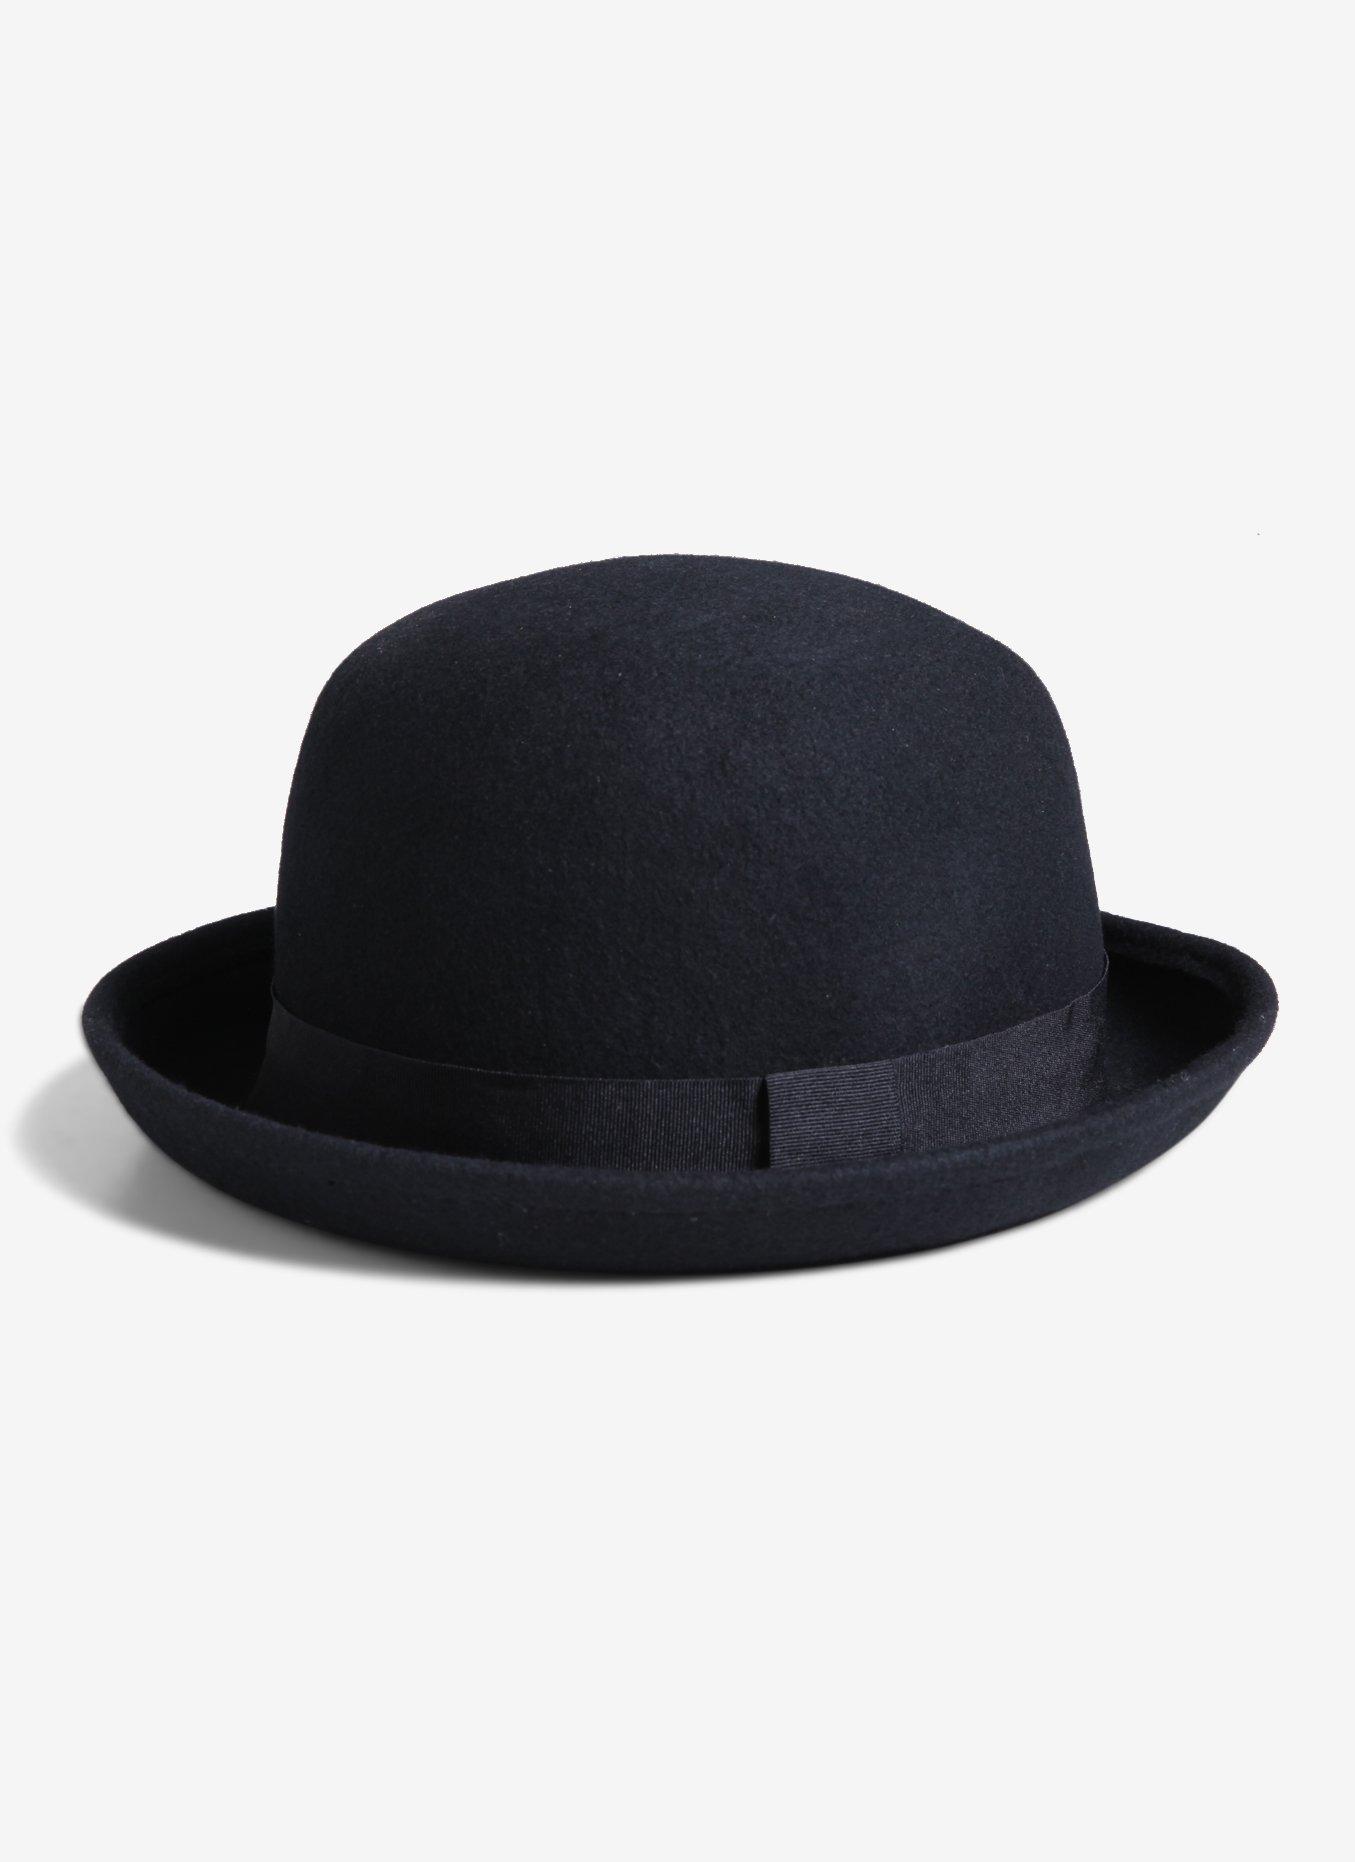 kalligrafi Og hold Ondartet Black Bowler Hat | Hot Topic